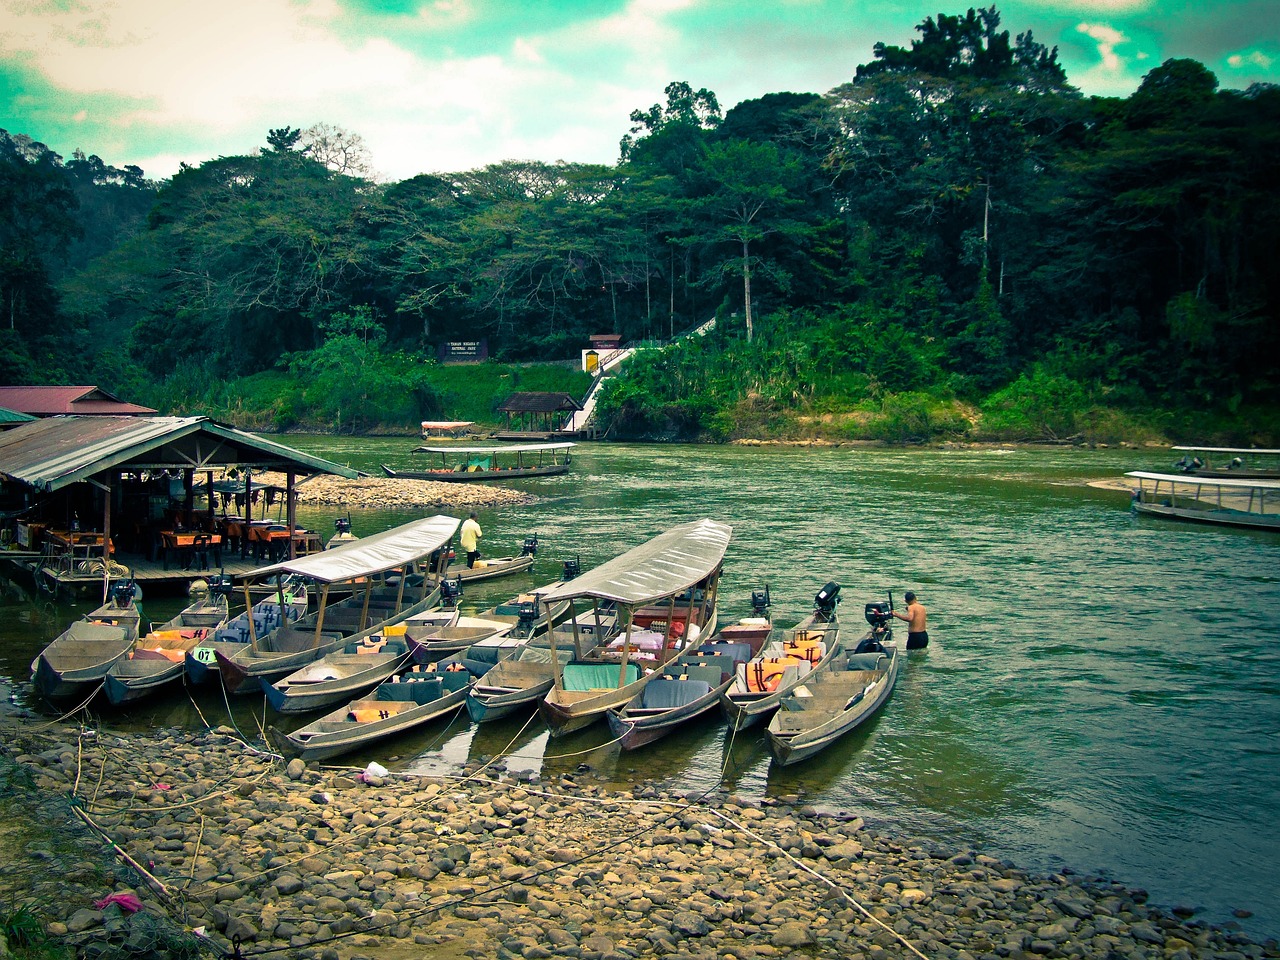 Boats on the Tembeling River at the Taman Negara National Park